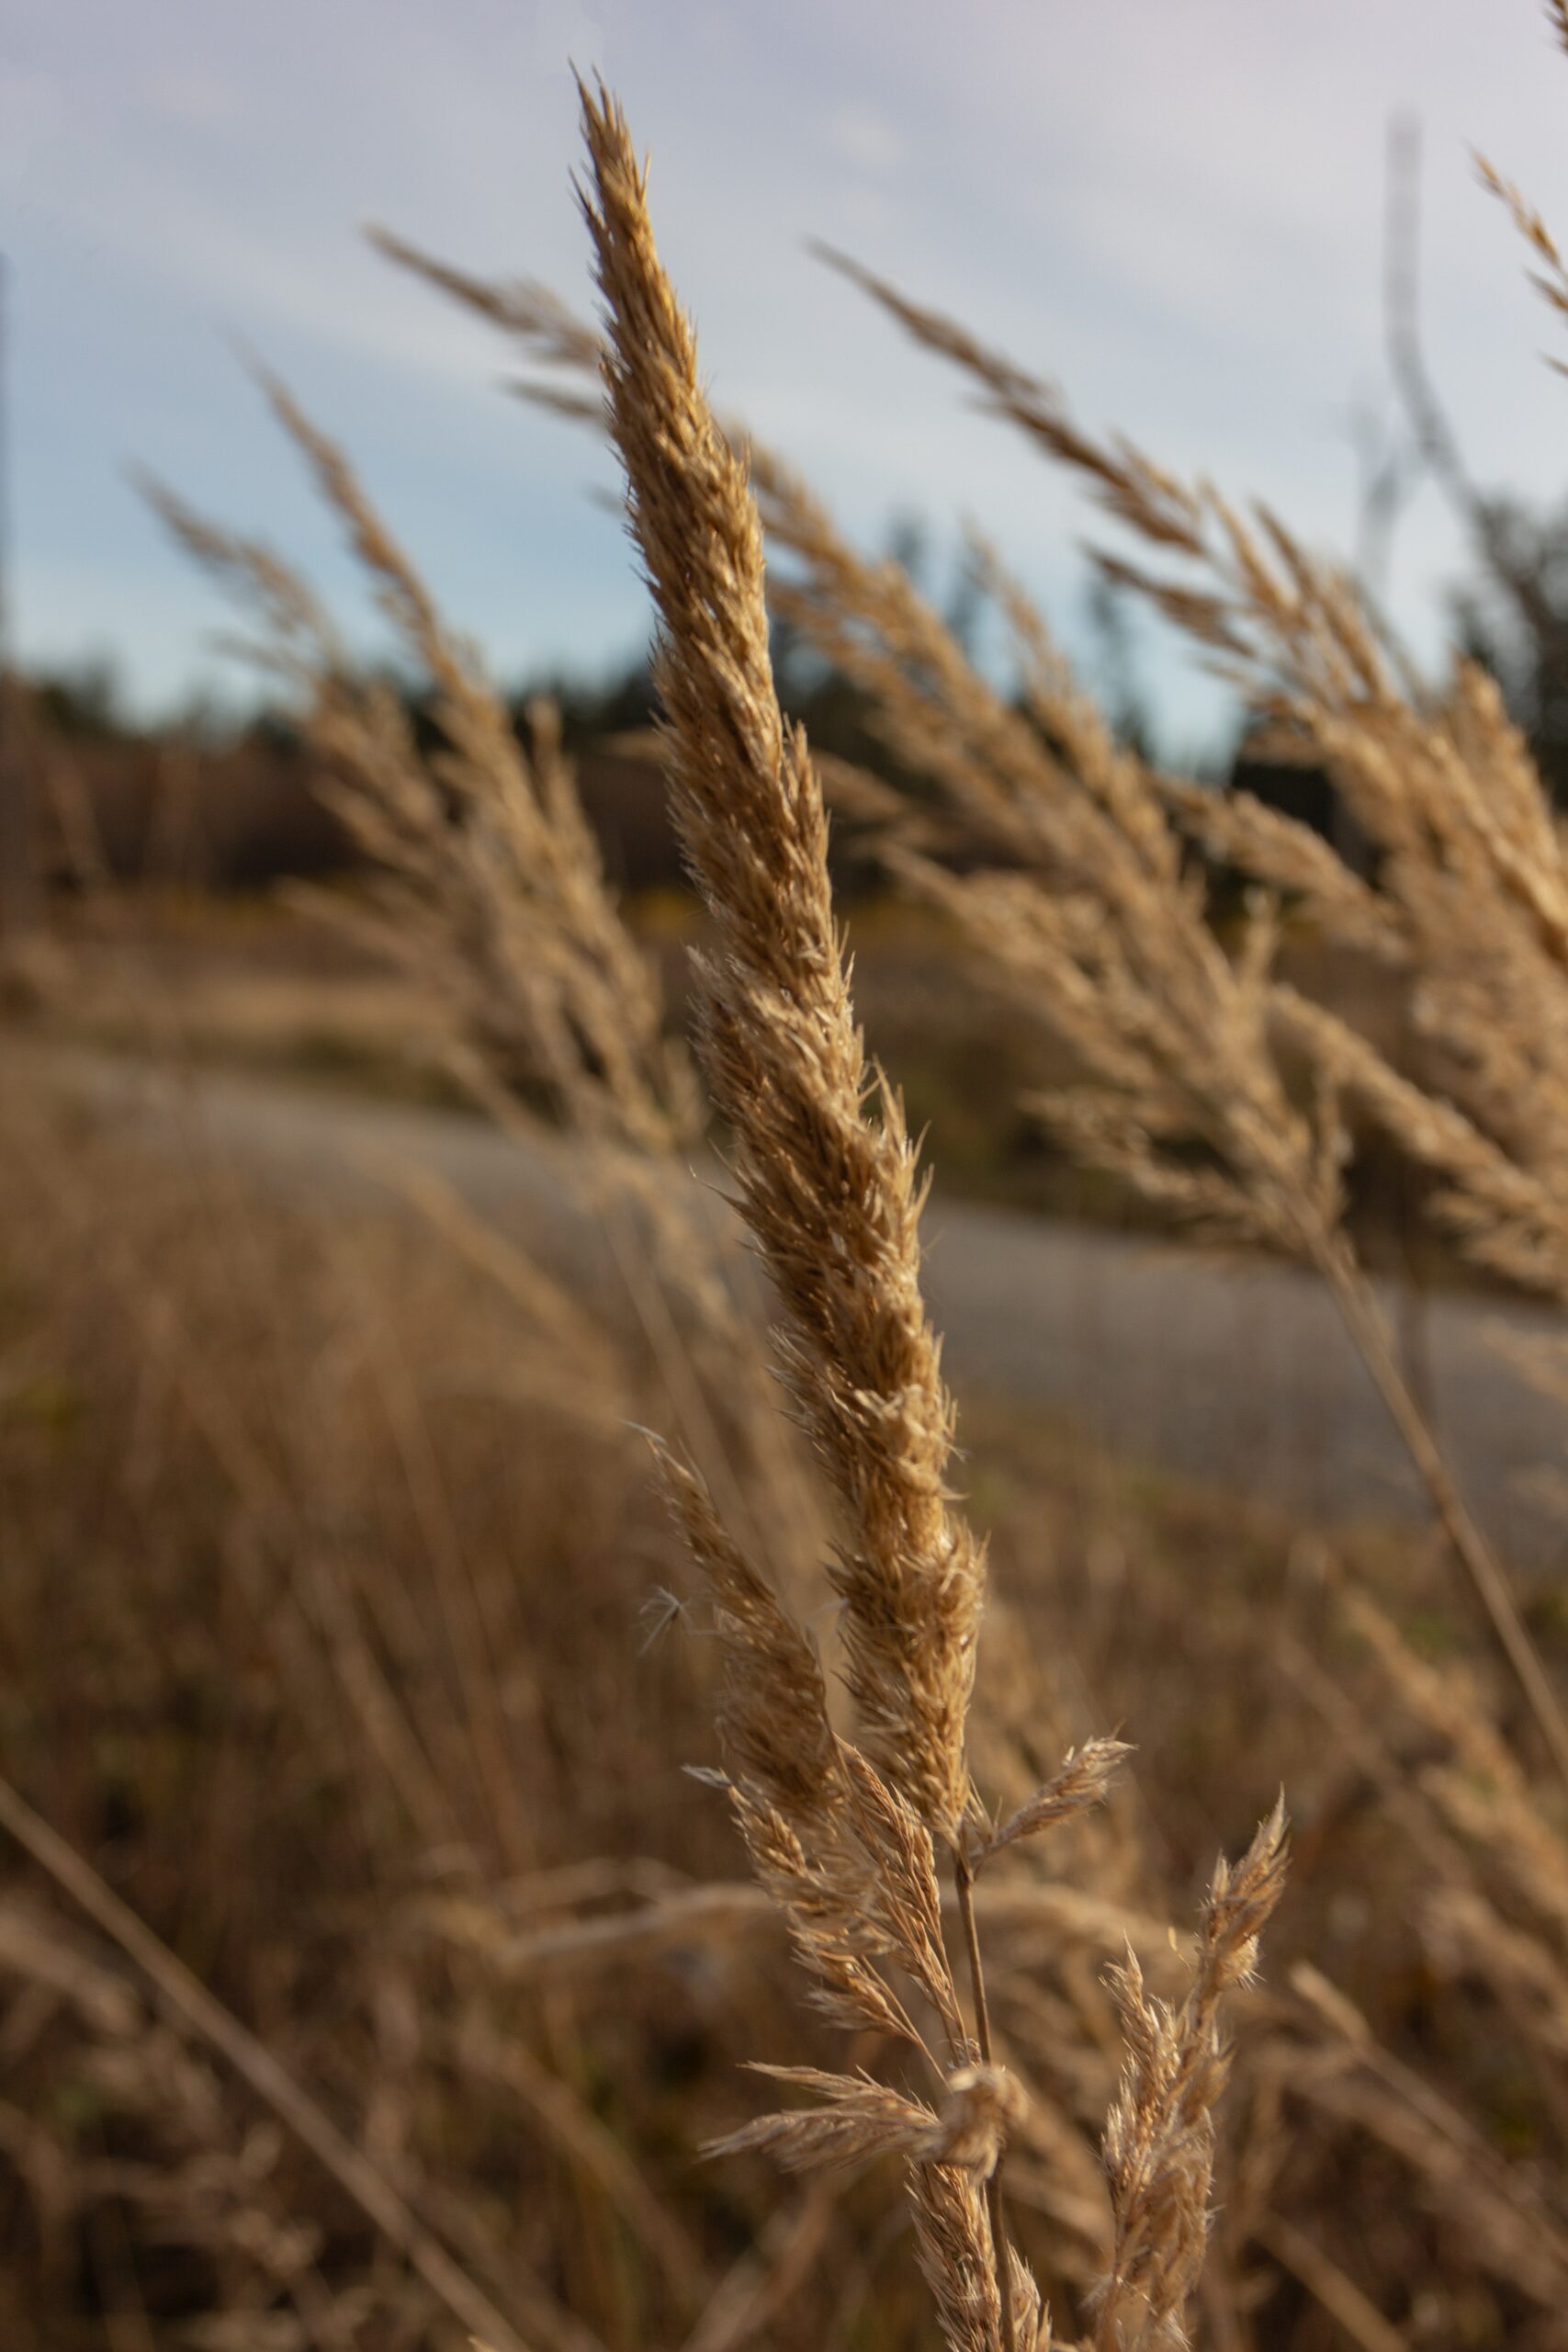 Fall Garden - Wheat in field